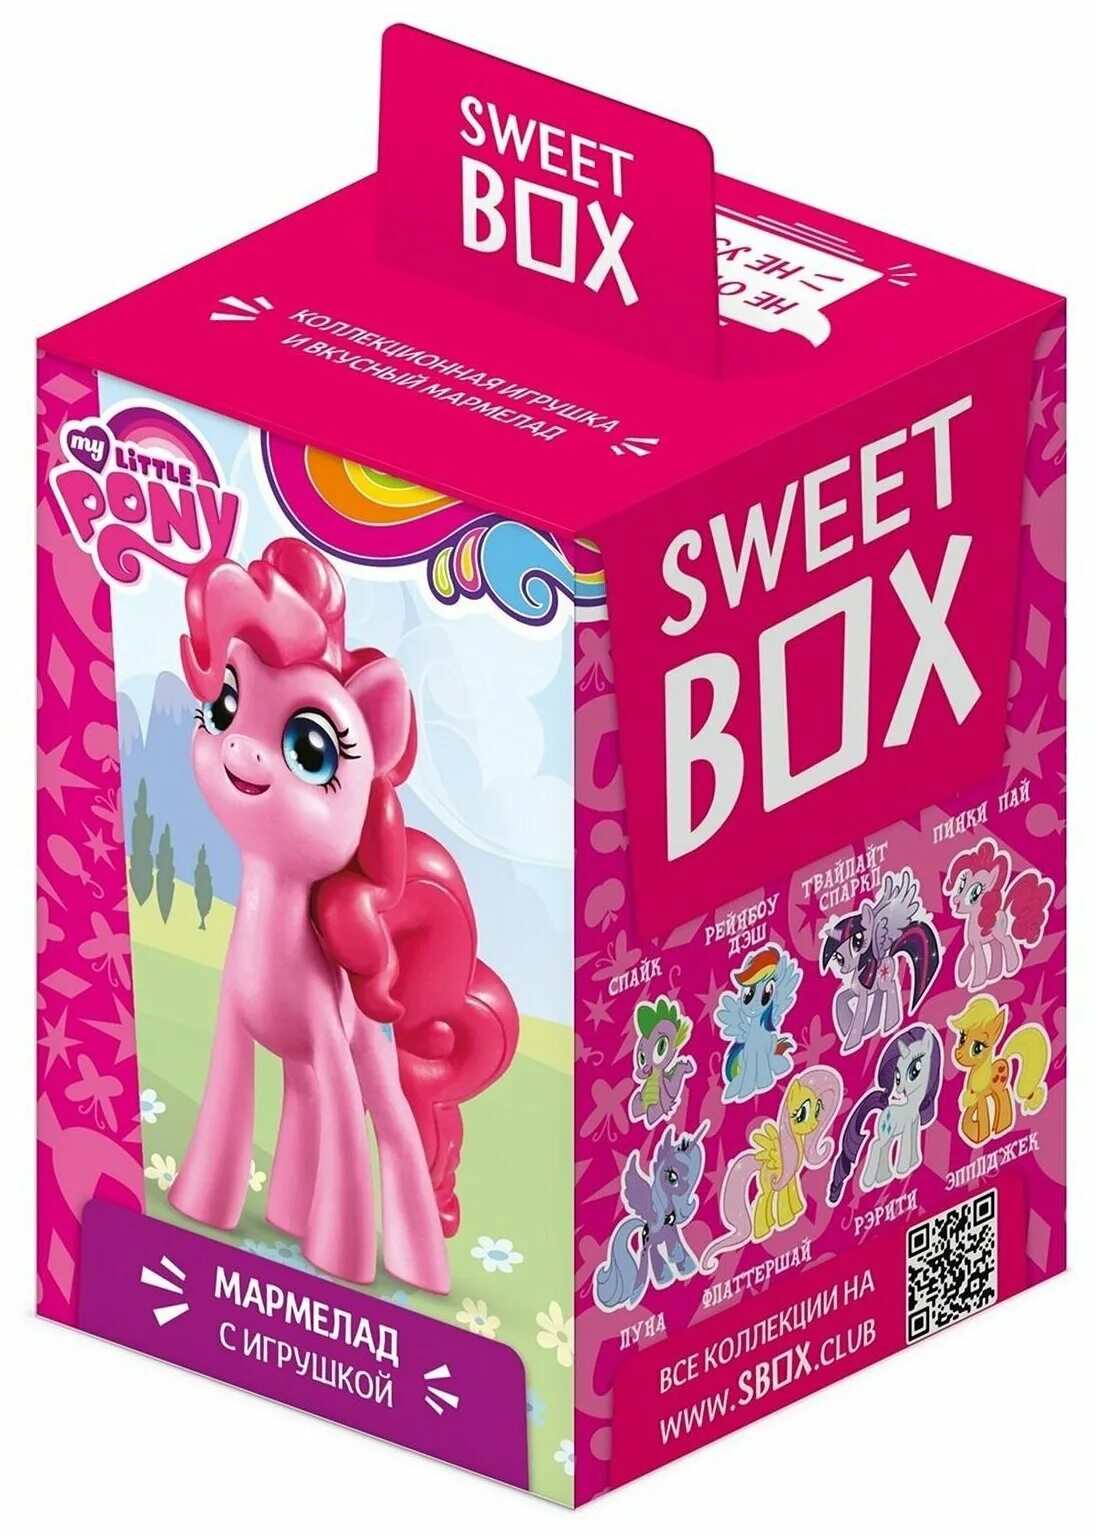 Sweetbox Свитбокс my little Pony. Мармелад Sweet Box my little Pony с игрушкой. Sweetbox игрушки пони Sweet Box пони игрушки. Box my little Pony Свит бокс. Pony box